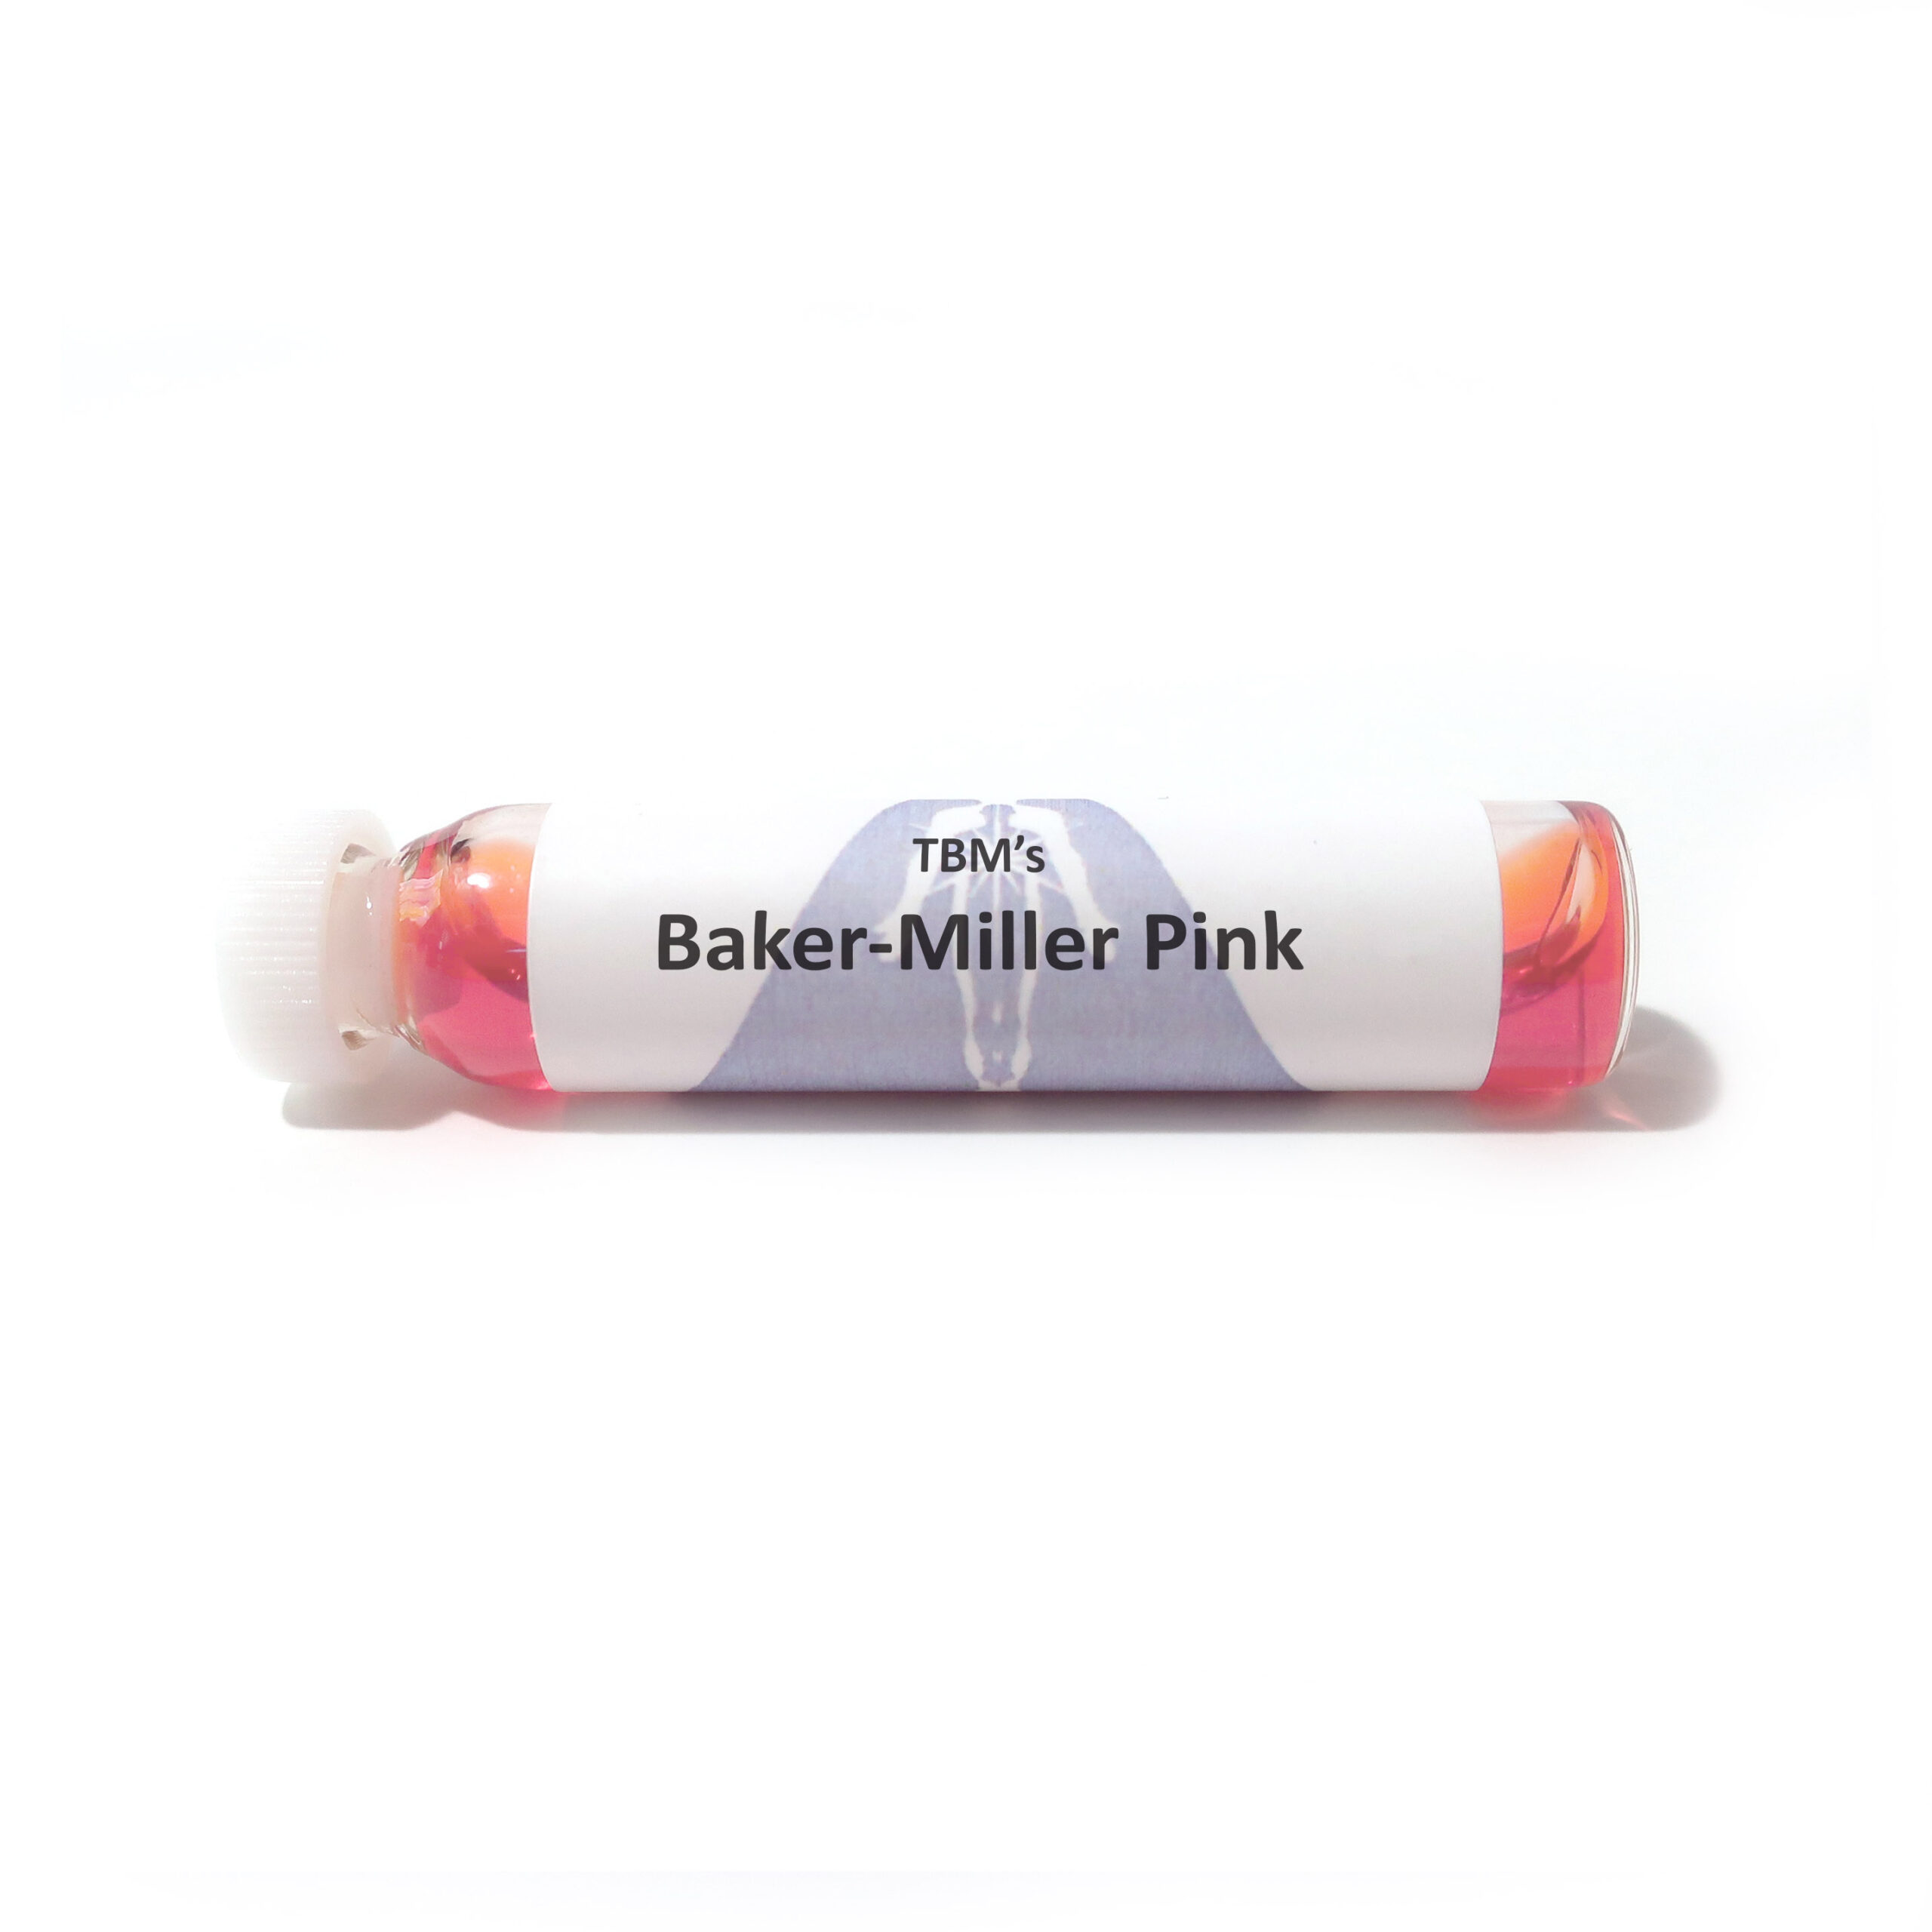 Baker-Miller Pink